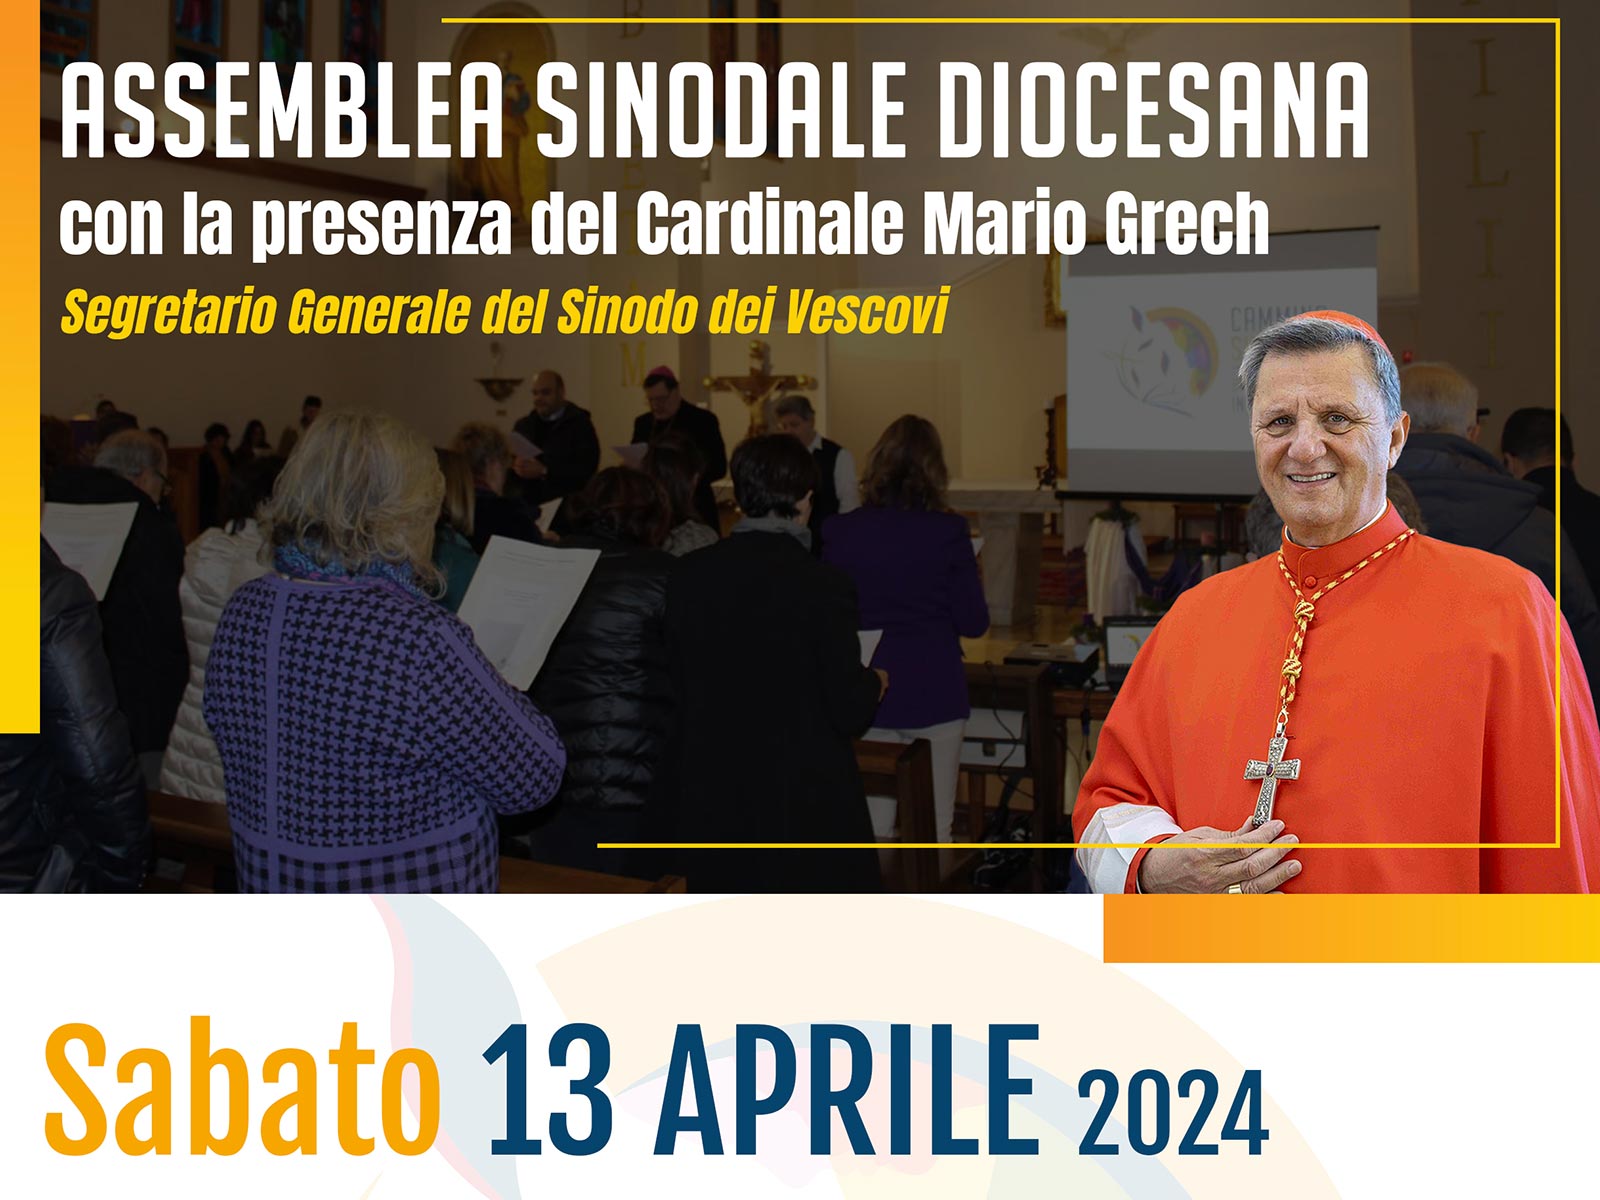 Anteprima dell'Assemblea Sinodale Diocesana del 13 aprile 2024 con la presenza del Cardinale Mario Grech